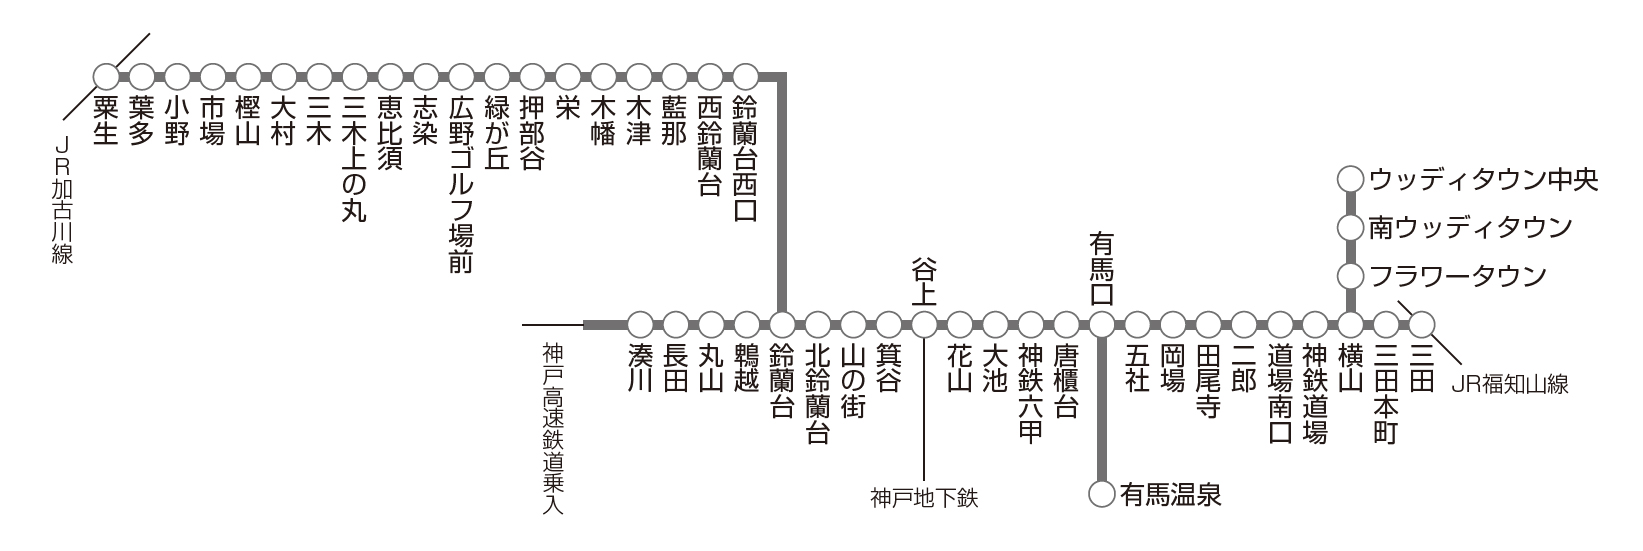 神戸電鉄 路線図